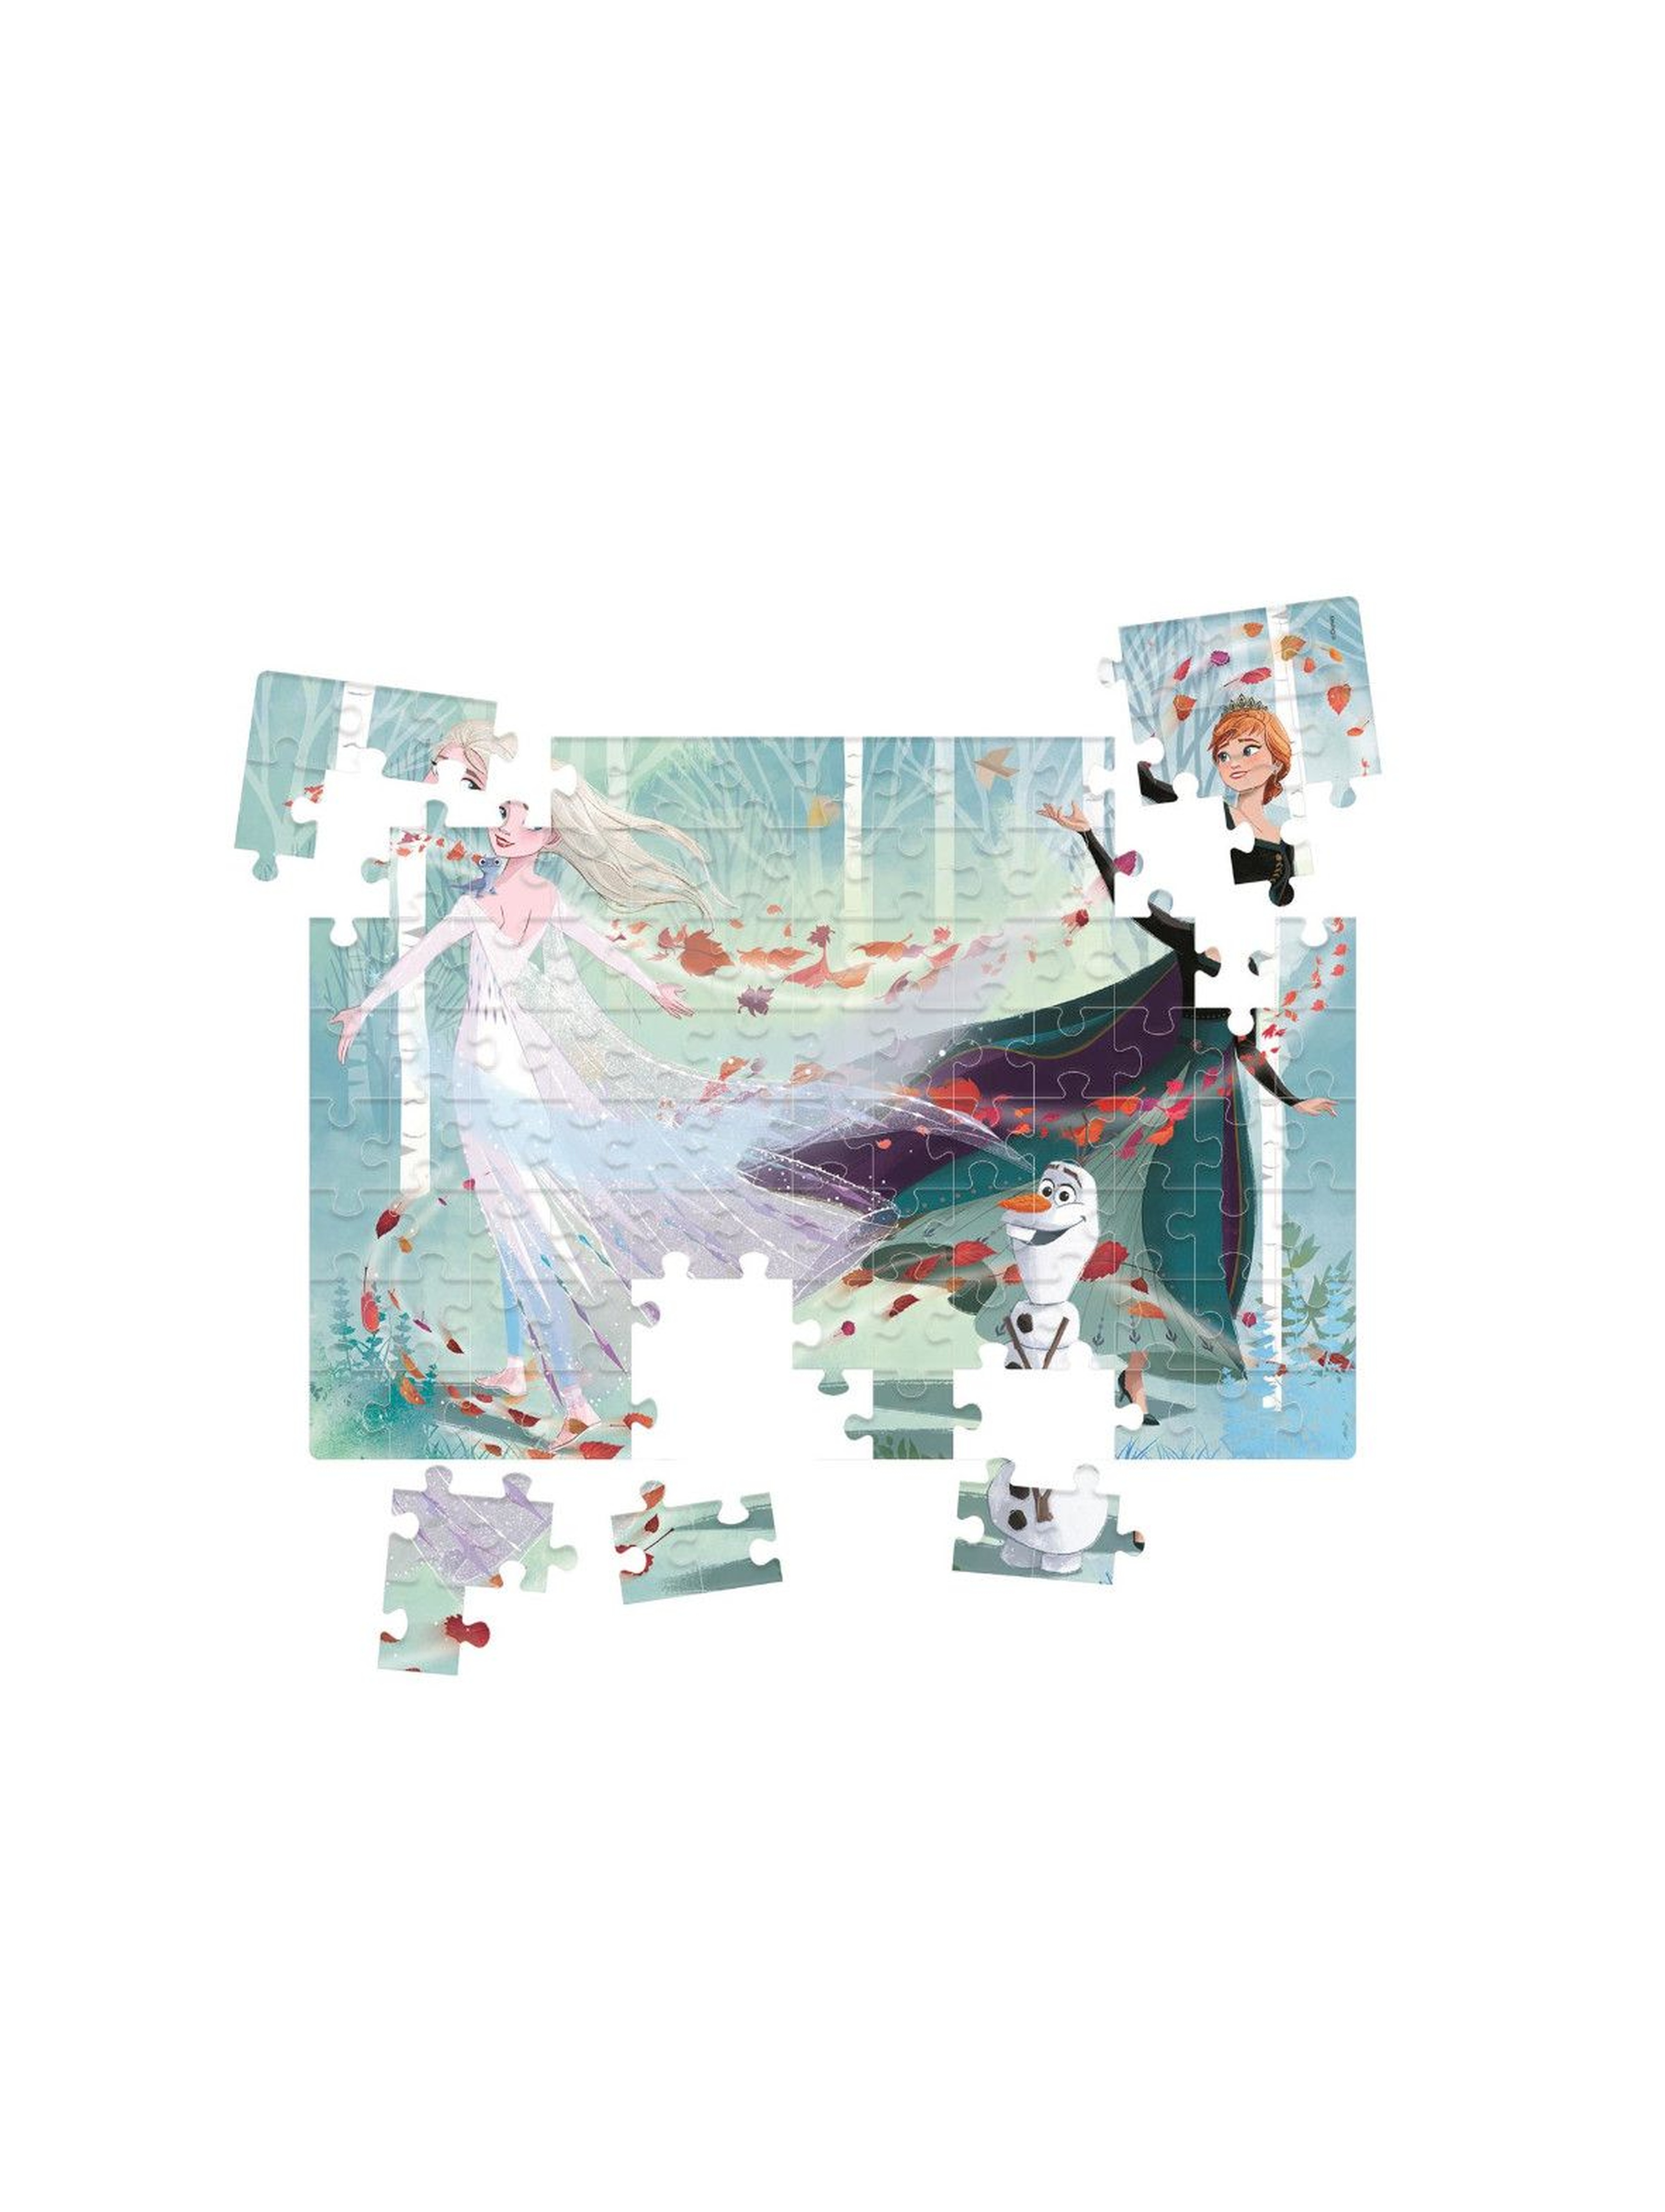 Puzzle happy Color Frozen II - 104 elementy - wiek 6+